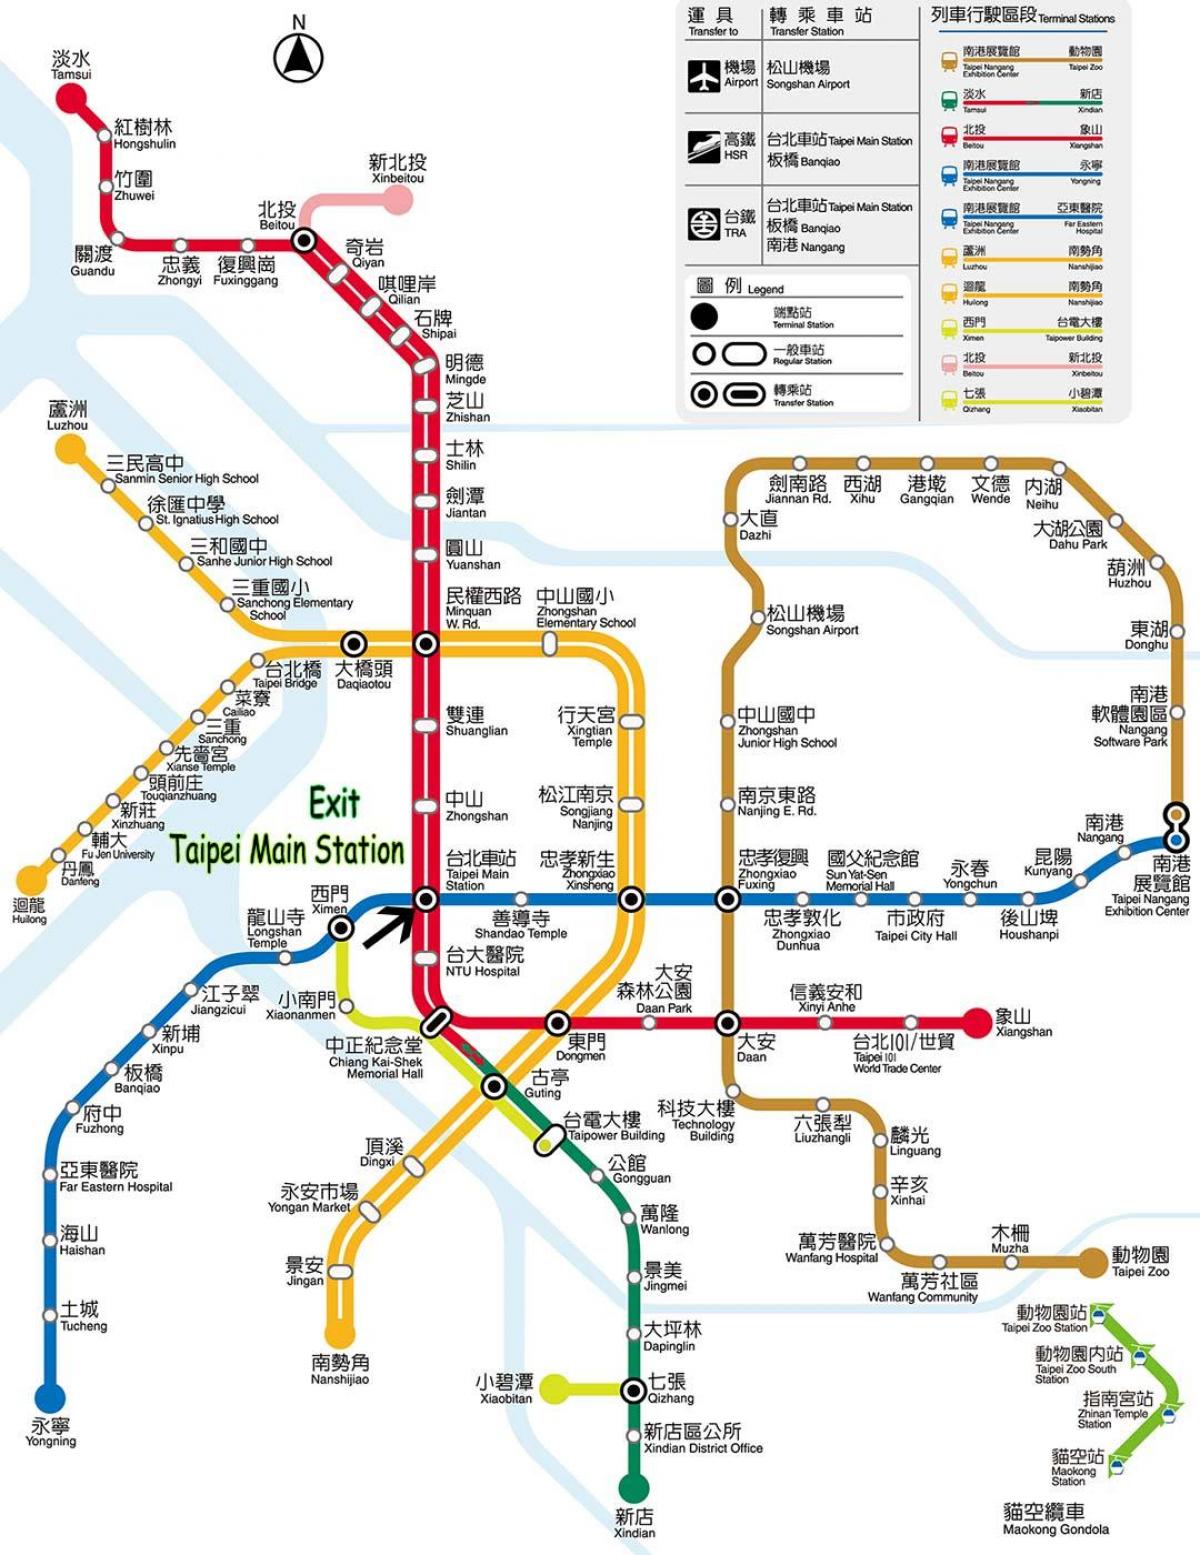 แผนที่ของไทเปนรถบัสสถานี